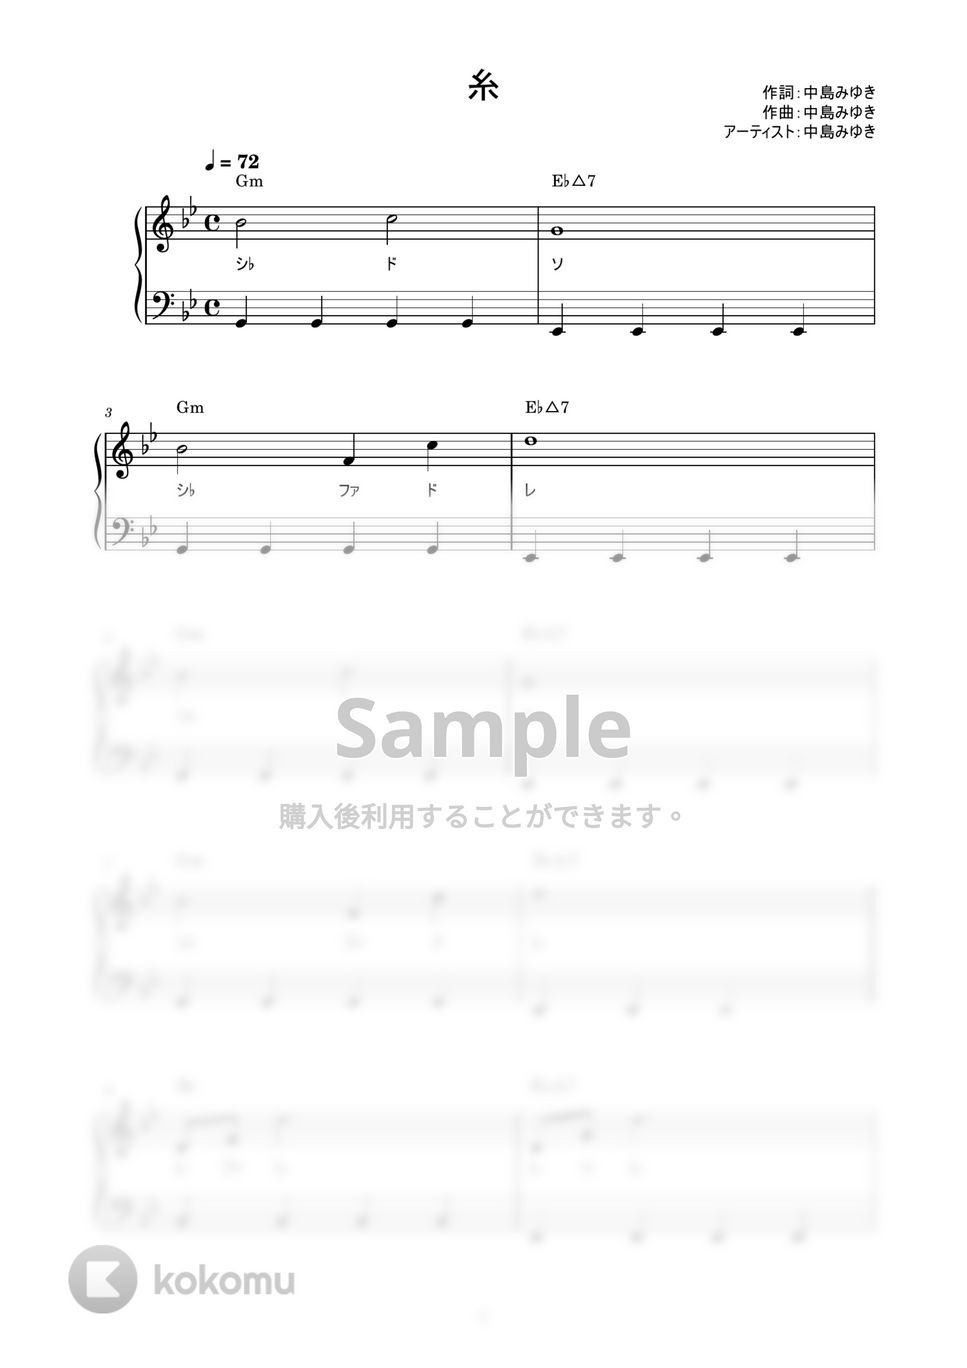 中島みゆき - 糸 (かんたん / 歌詞付き / ドレミ付き / 初心者) by piano.tokyo